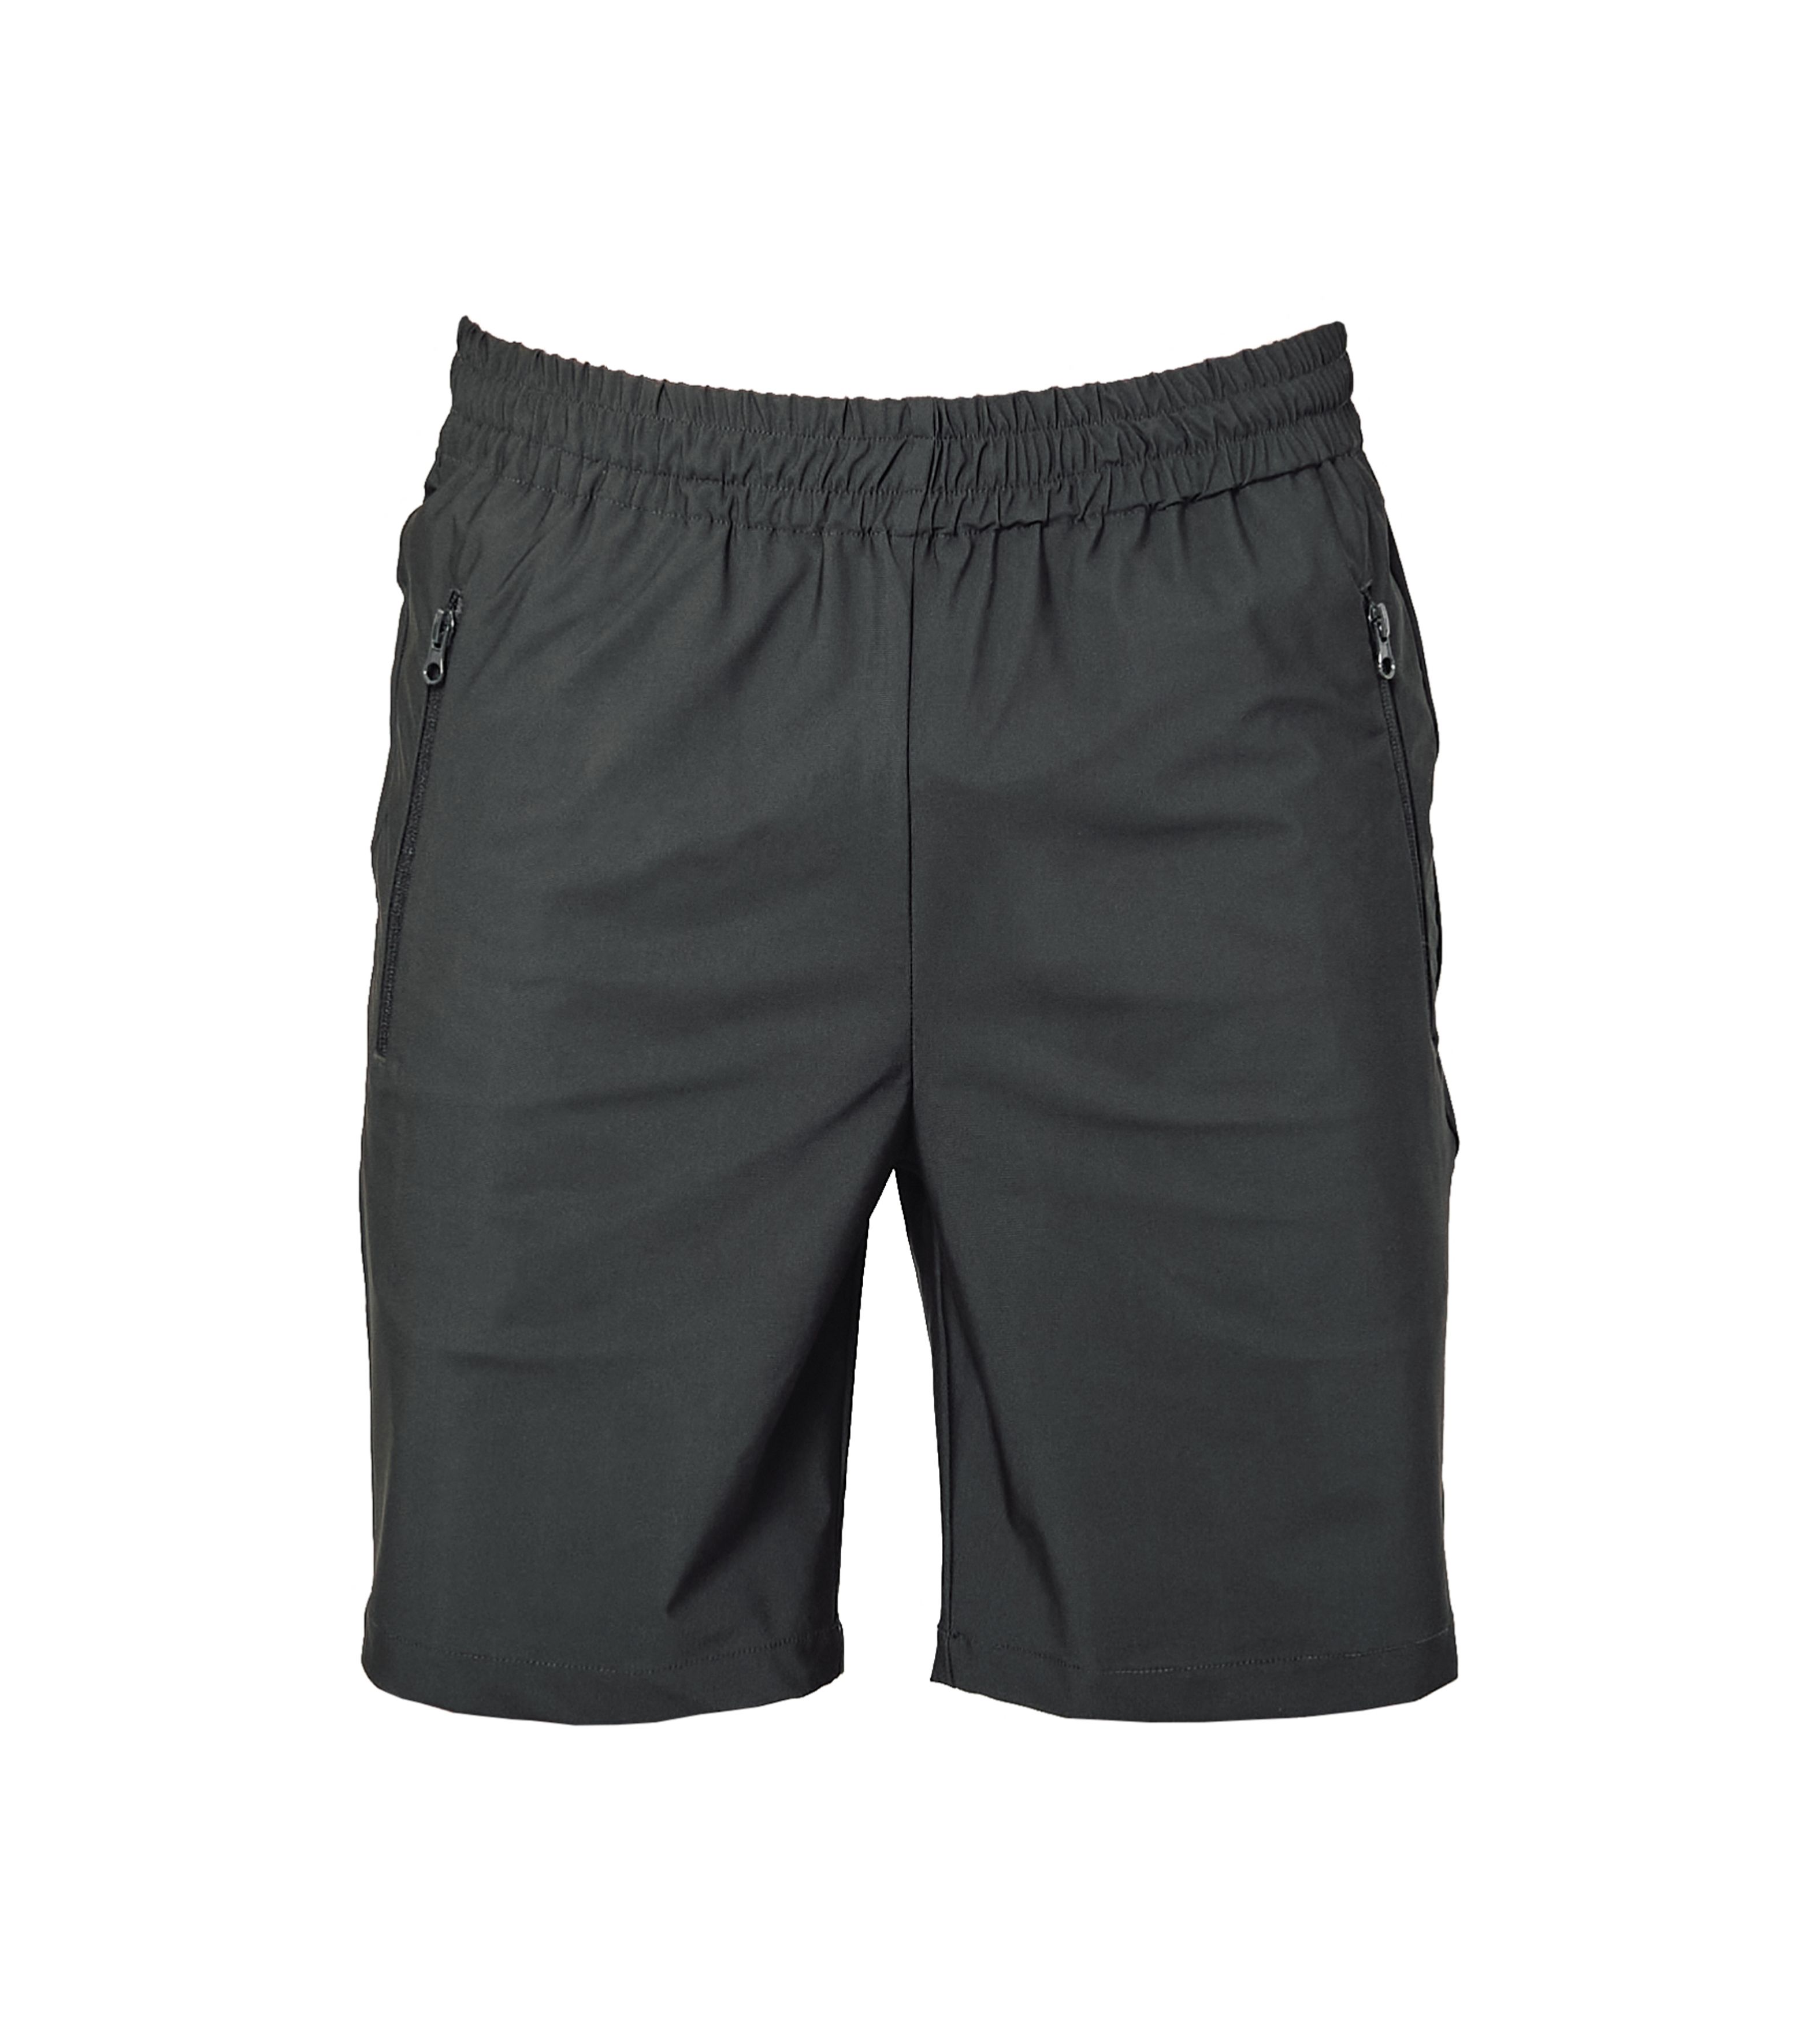 Pantalone Capri Shorts